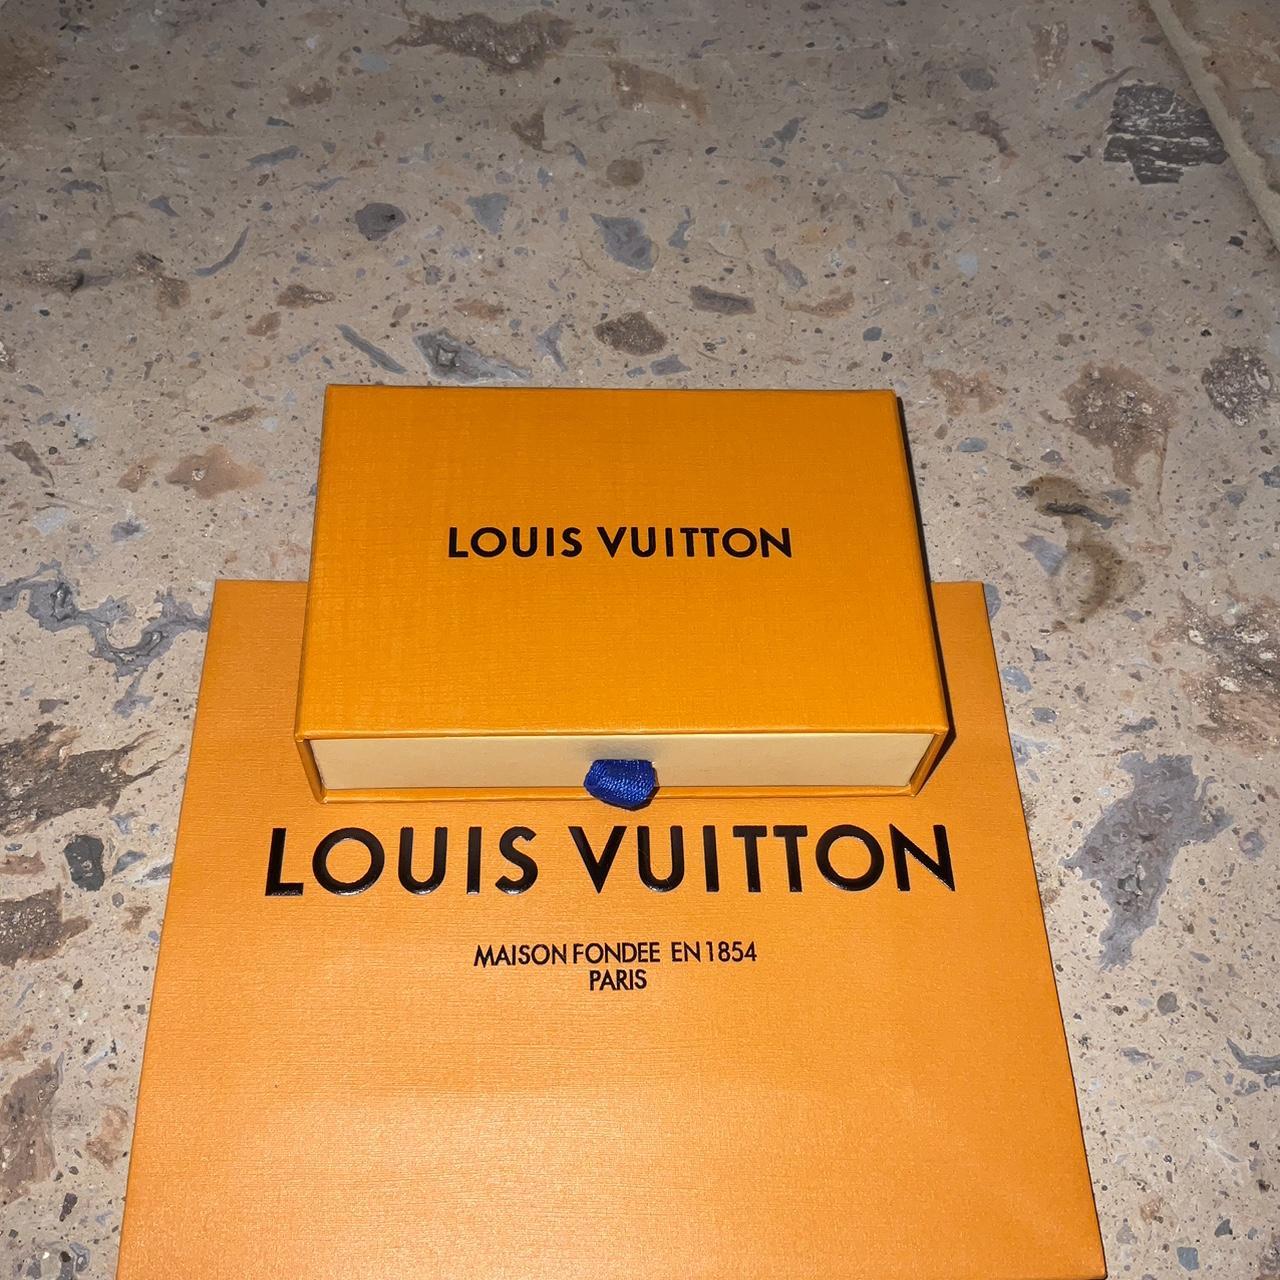 Bravest Studios LV “Louis Vuitton” Lakers print - Depop